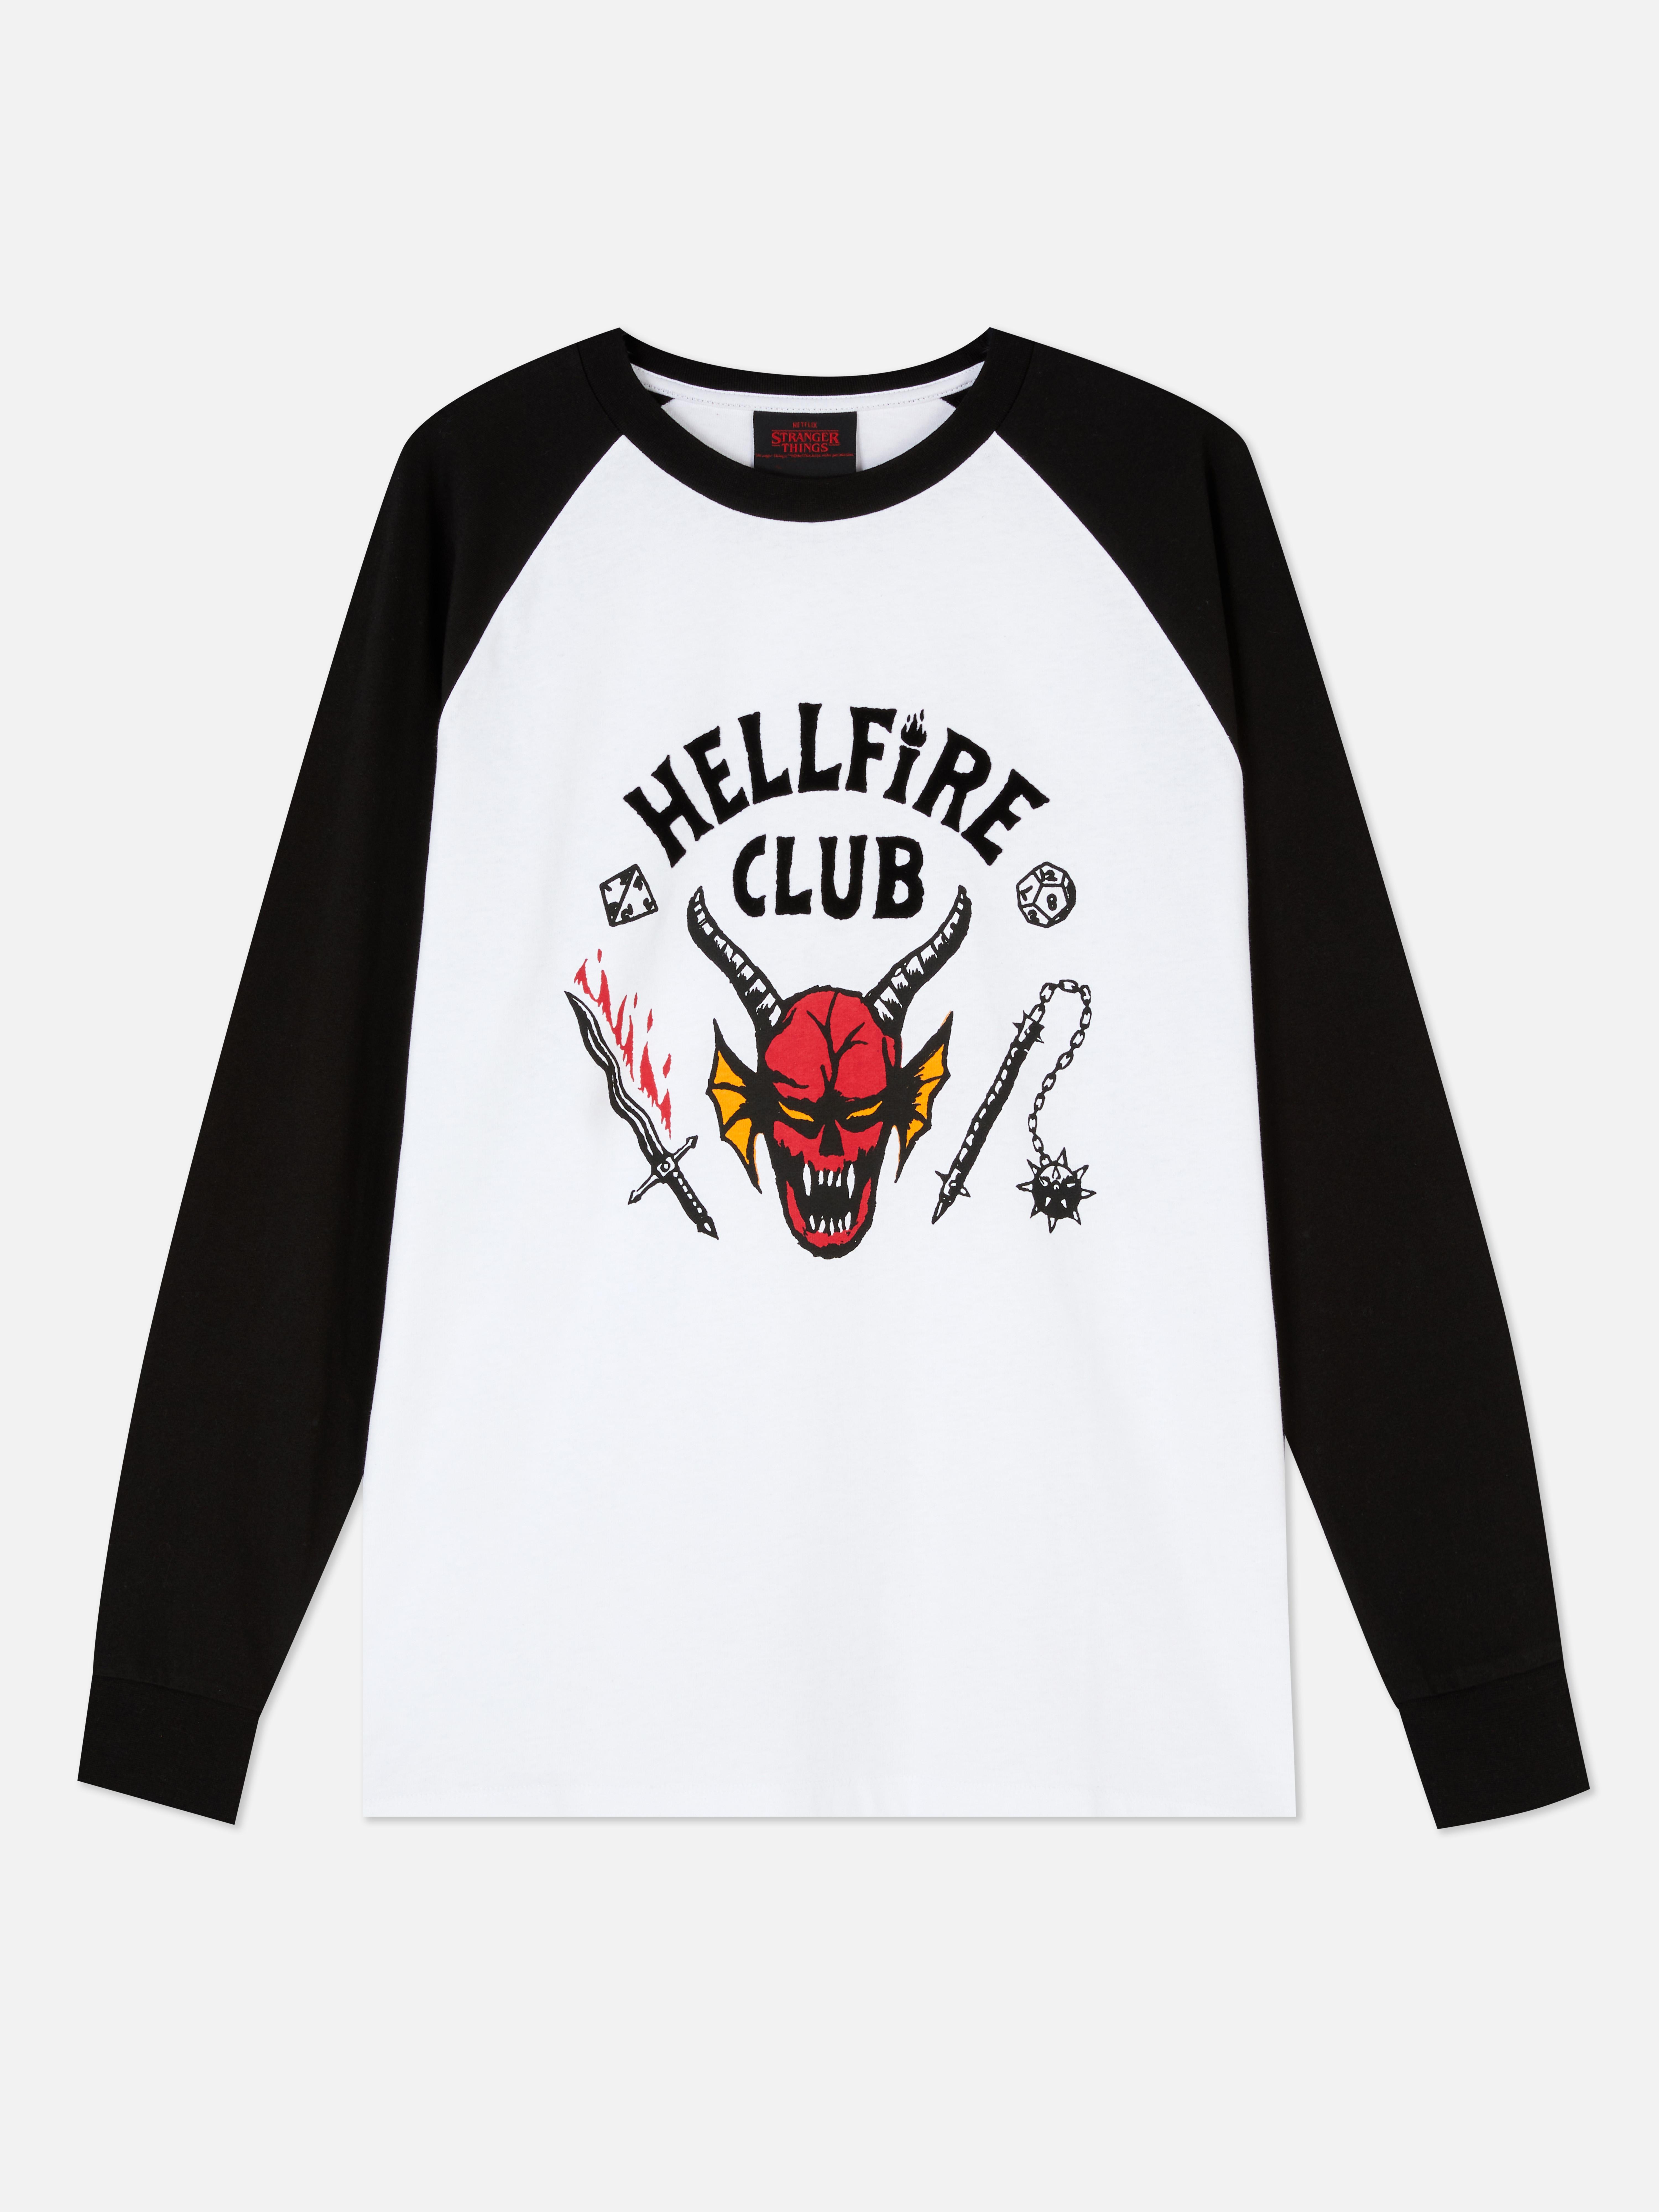 simplemente explorar su Camiseta de Hellfire Club de Stranger Things | Camisetas para hombre |  Camisetas y partes de arriba para hombre | Ropa para hombre | Nuestra línea  de moda masculina | Todos los productos Primark | Primark España